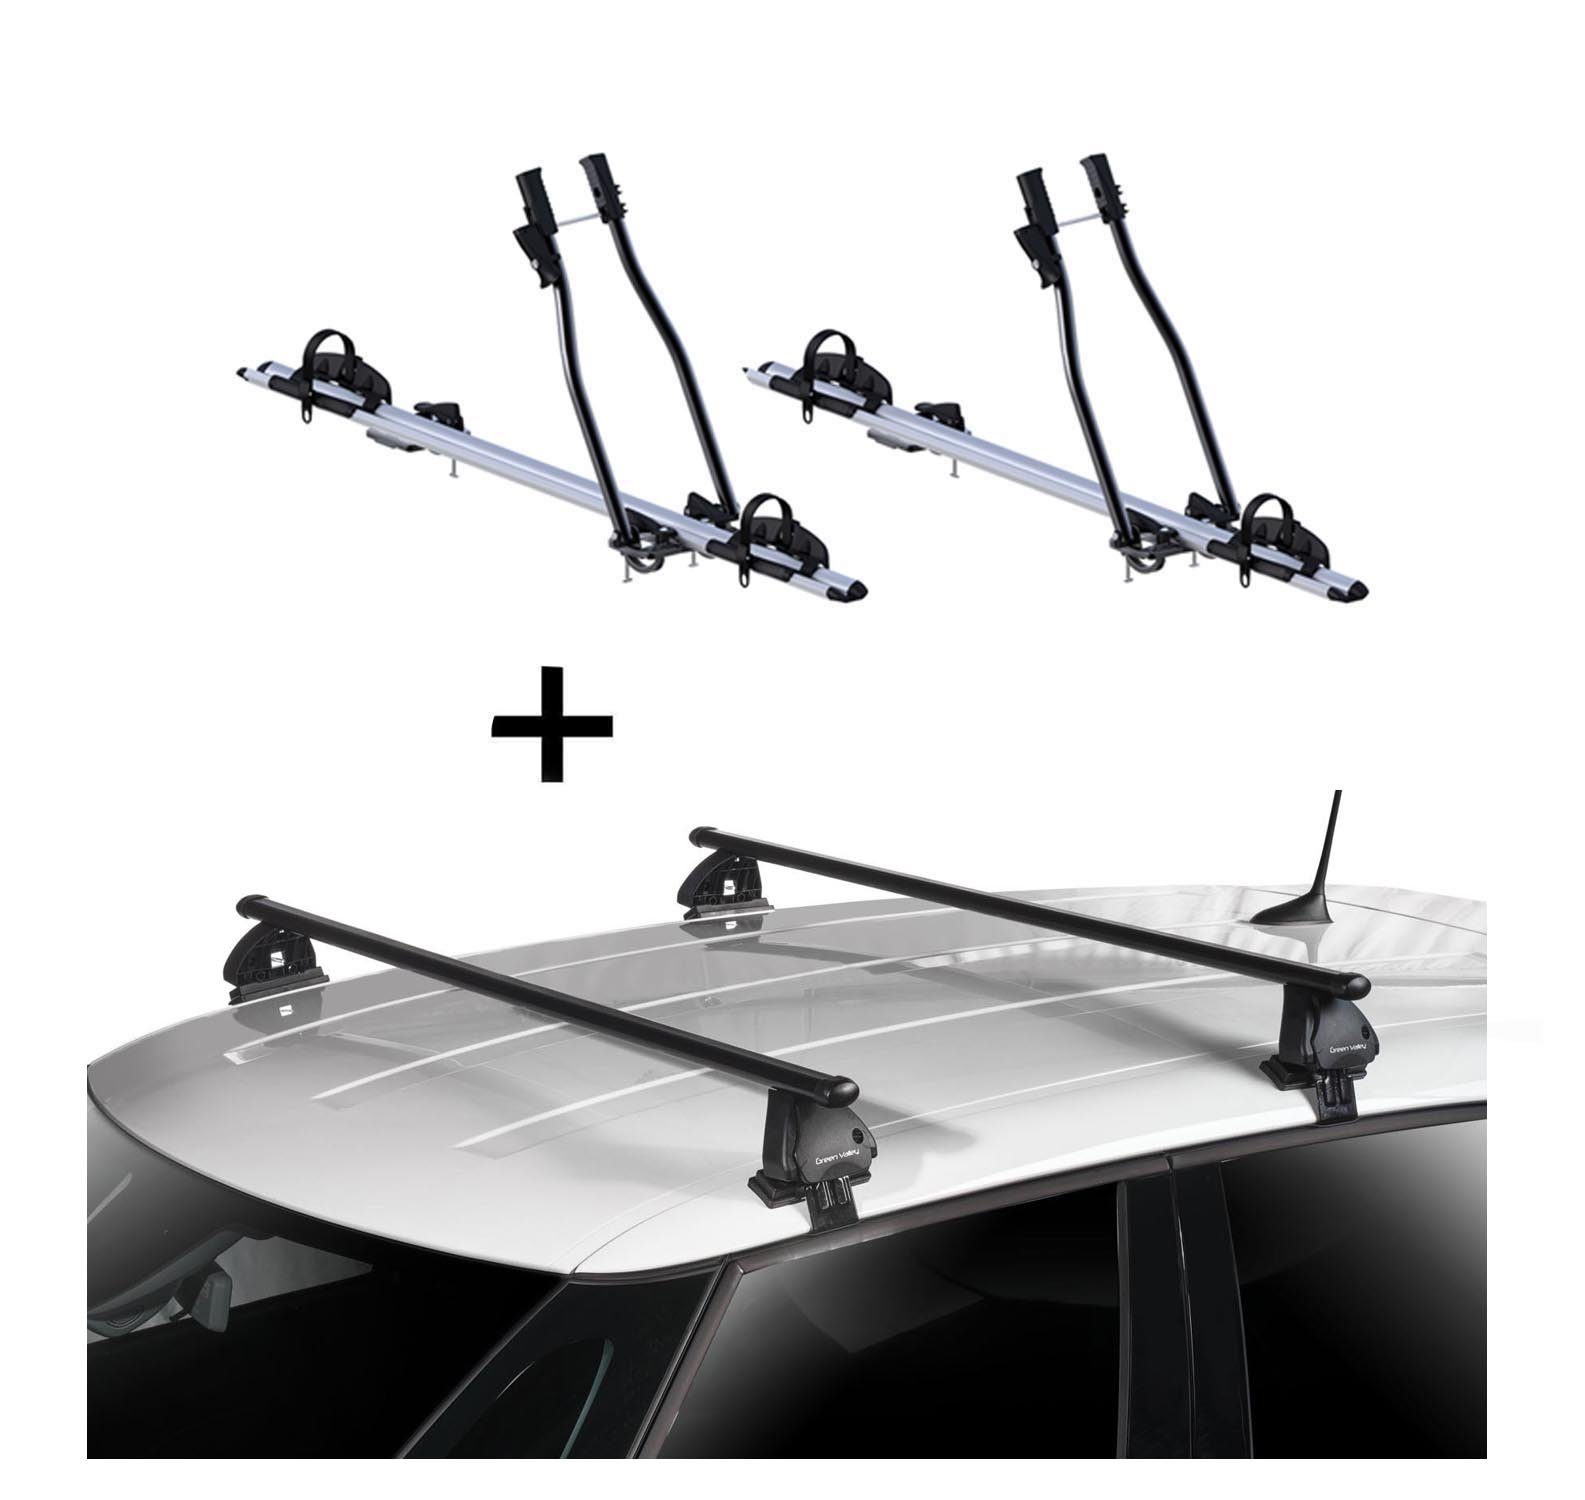 VDP Dachträger, 2x Fahrradträger SAGITTAR + Dachträger VDP EVO Stahl kompatibel mit Opel Grandland X 5 Türer ab 2017